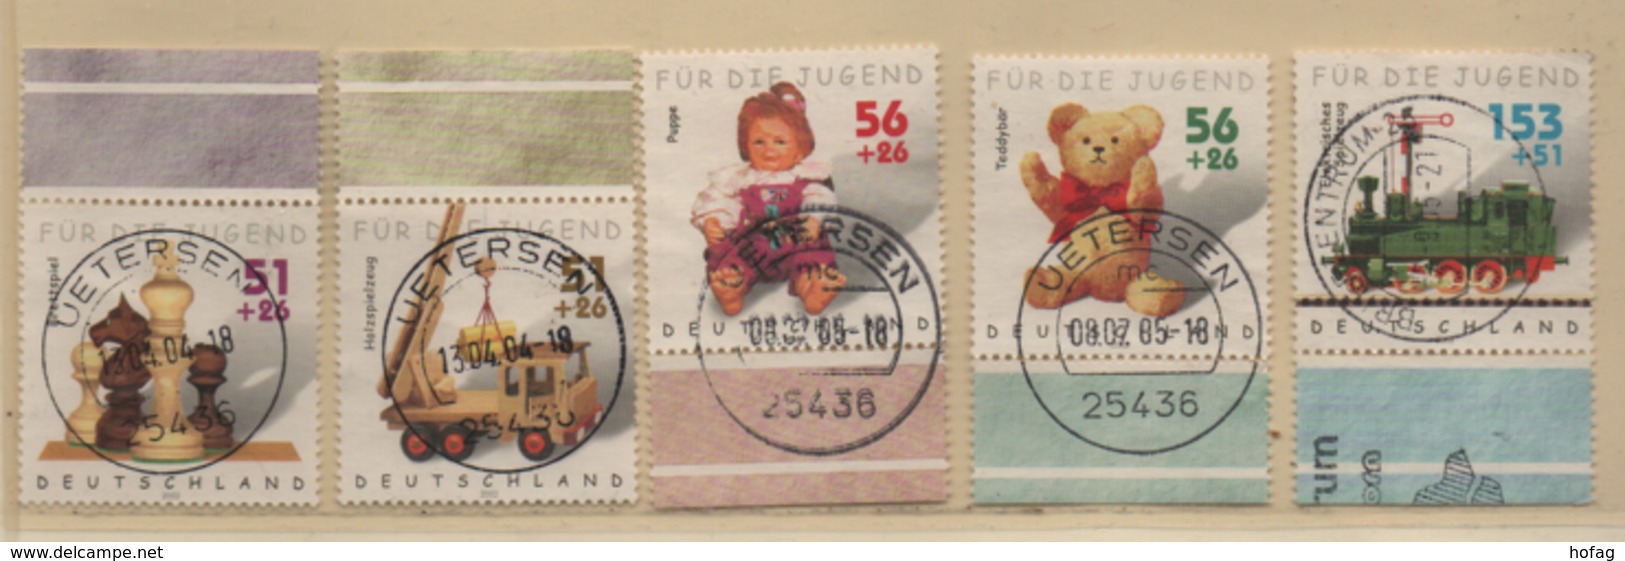 BRD 2002 MiNr. 2261-2264 Für Die Jugend, Randmarken Gestempelt; FRG Used Margin Stamps Charity - Used Stamps